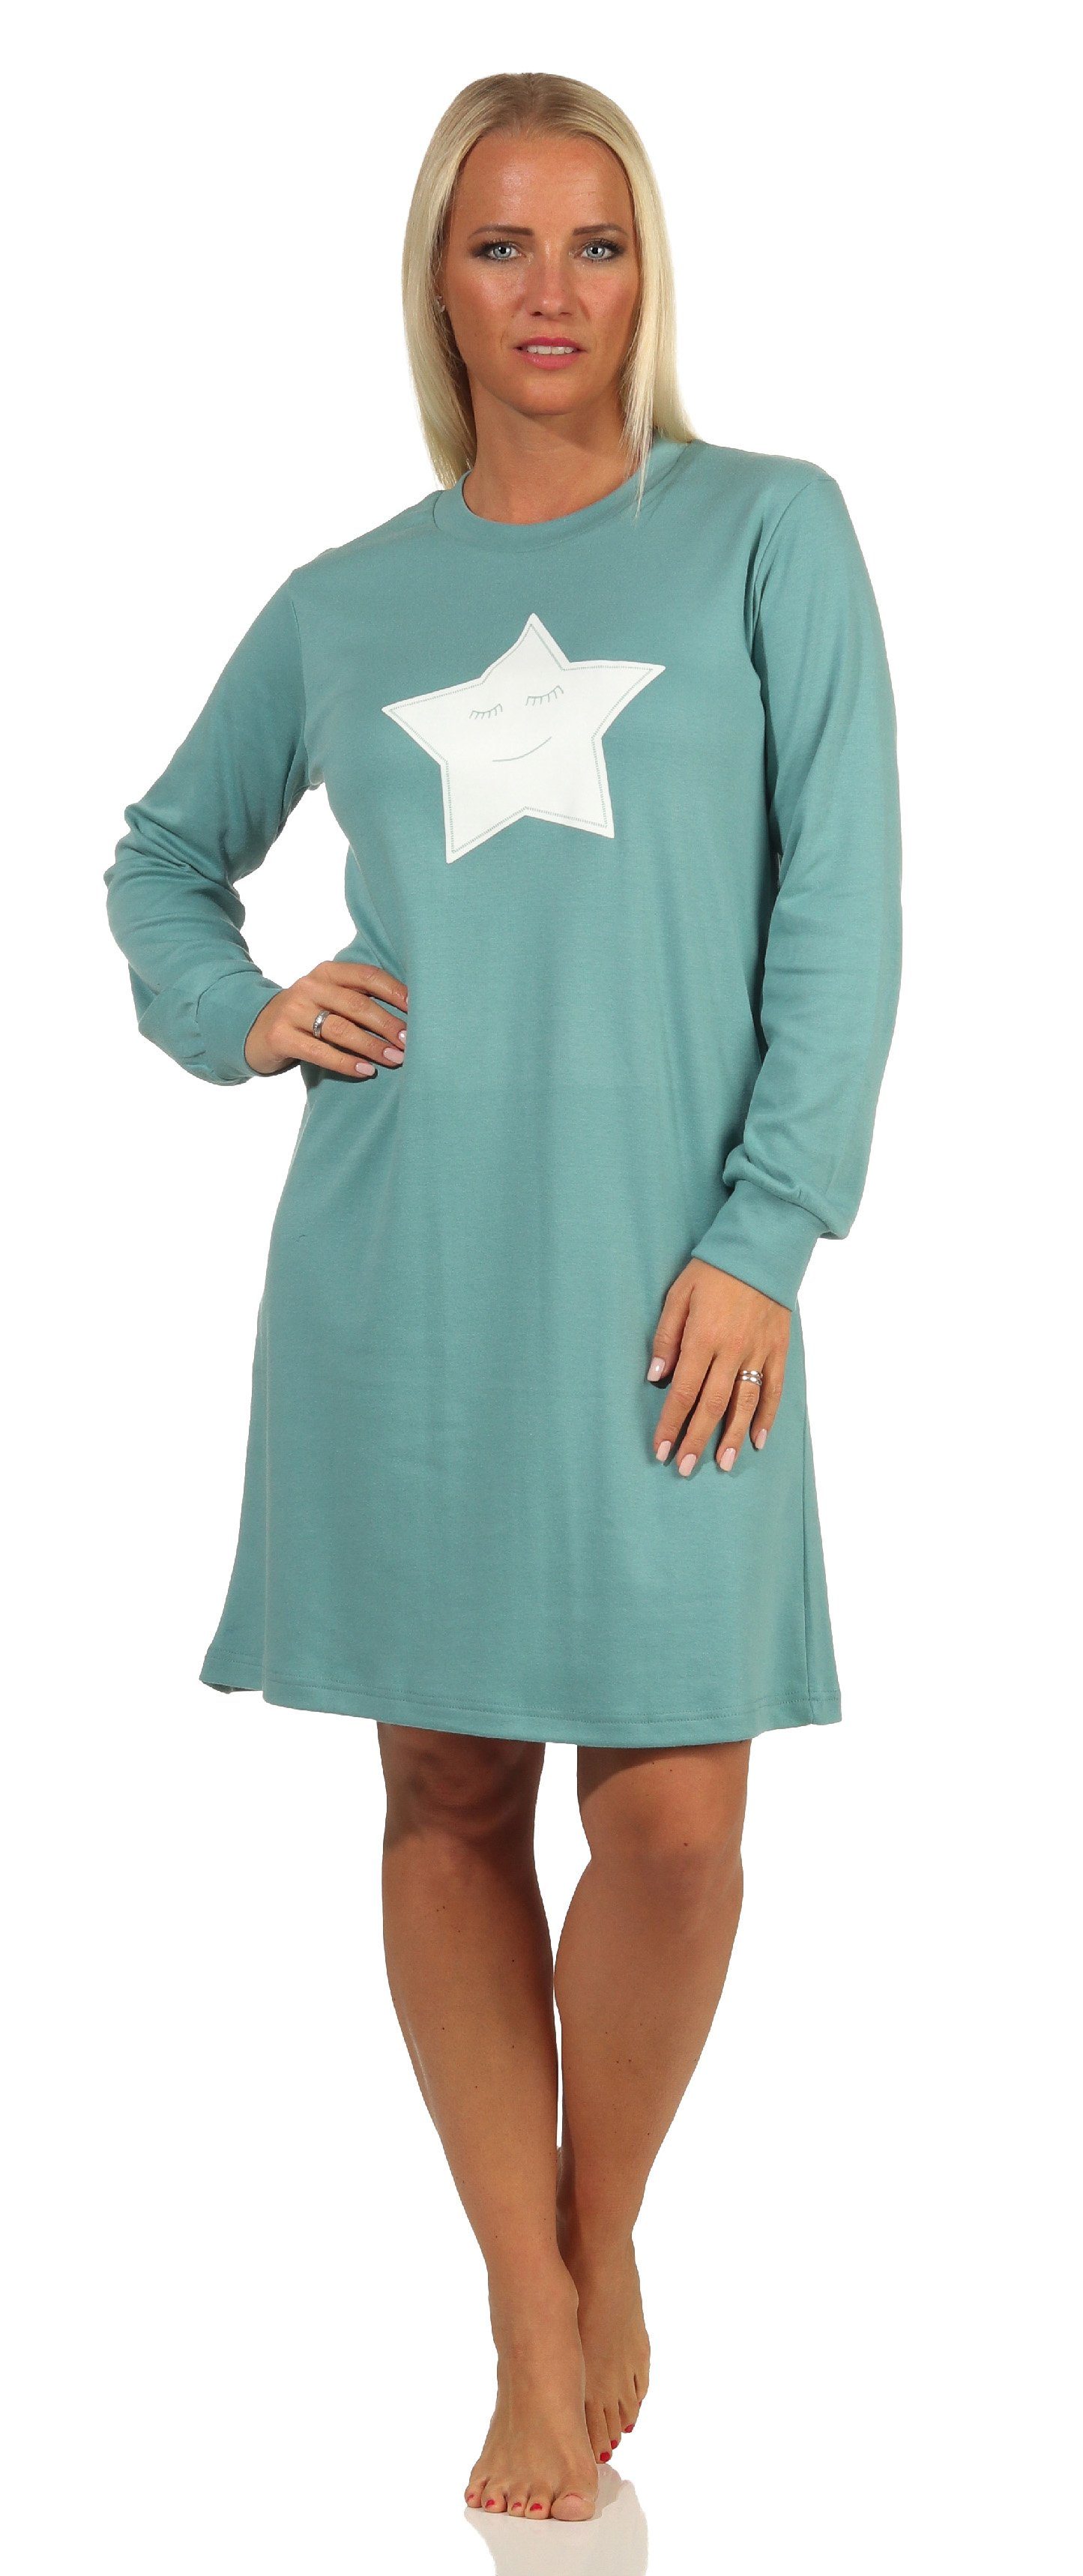 Normann Nachthemd »Kuschel Interlock Damen Nachthemd langarm mit Bündchen  und Sterne Motiv - 212 213 552« online kaufen | OTTO